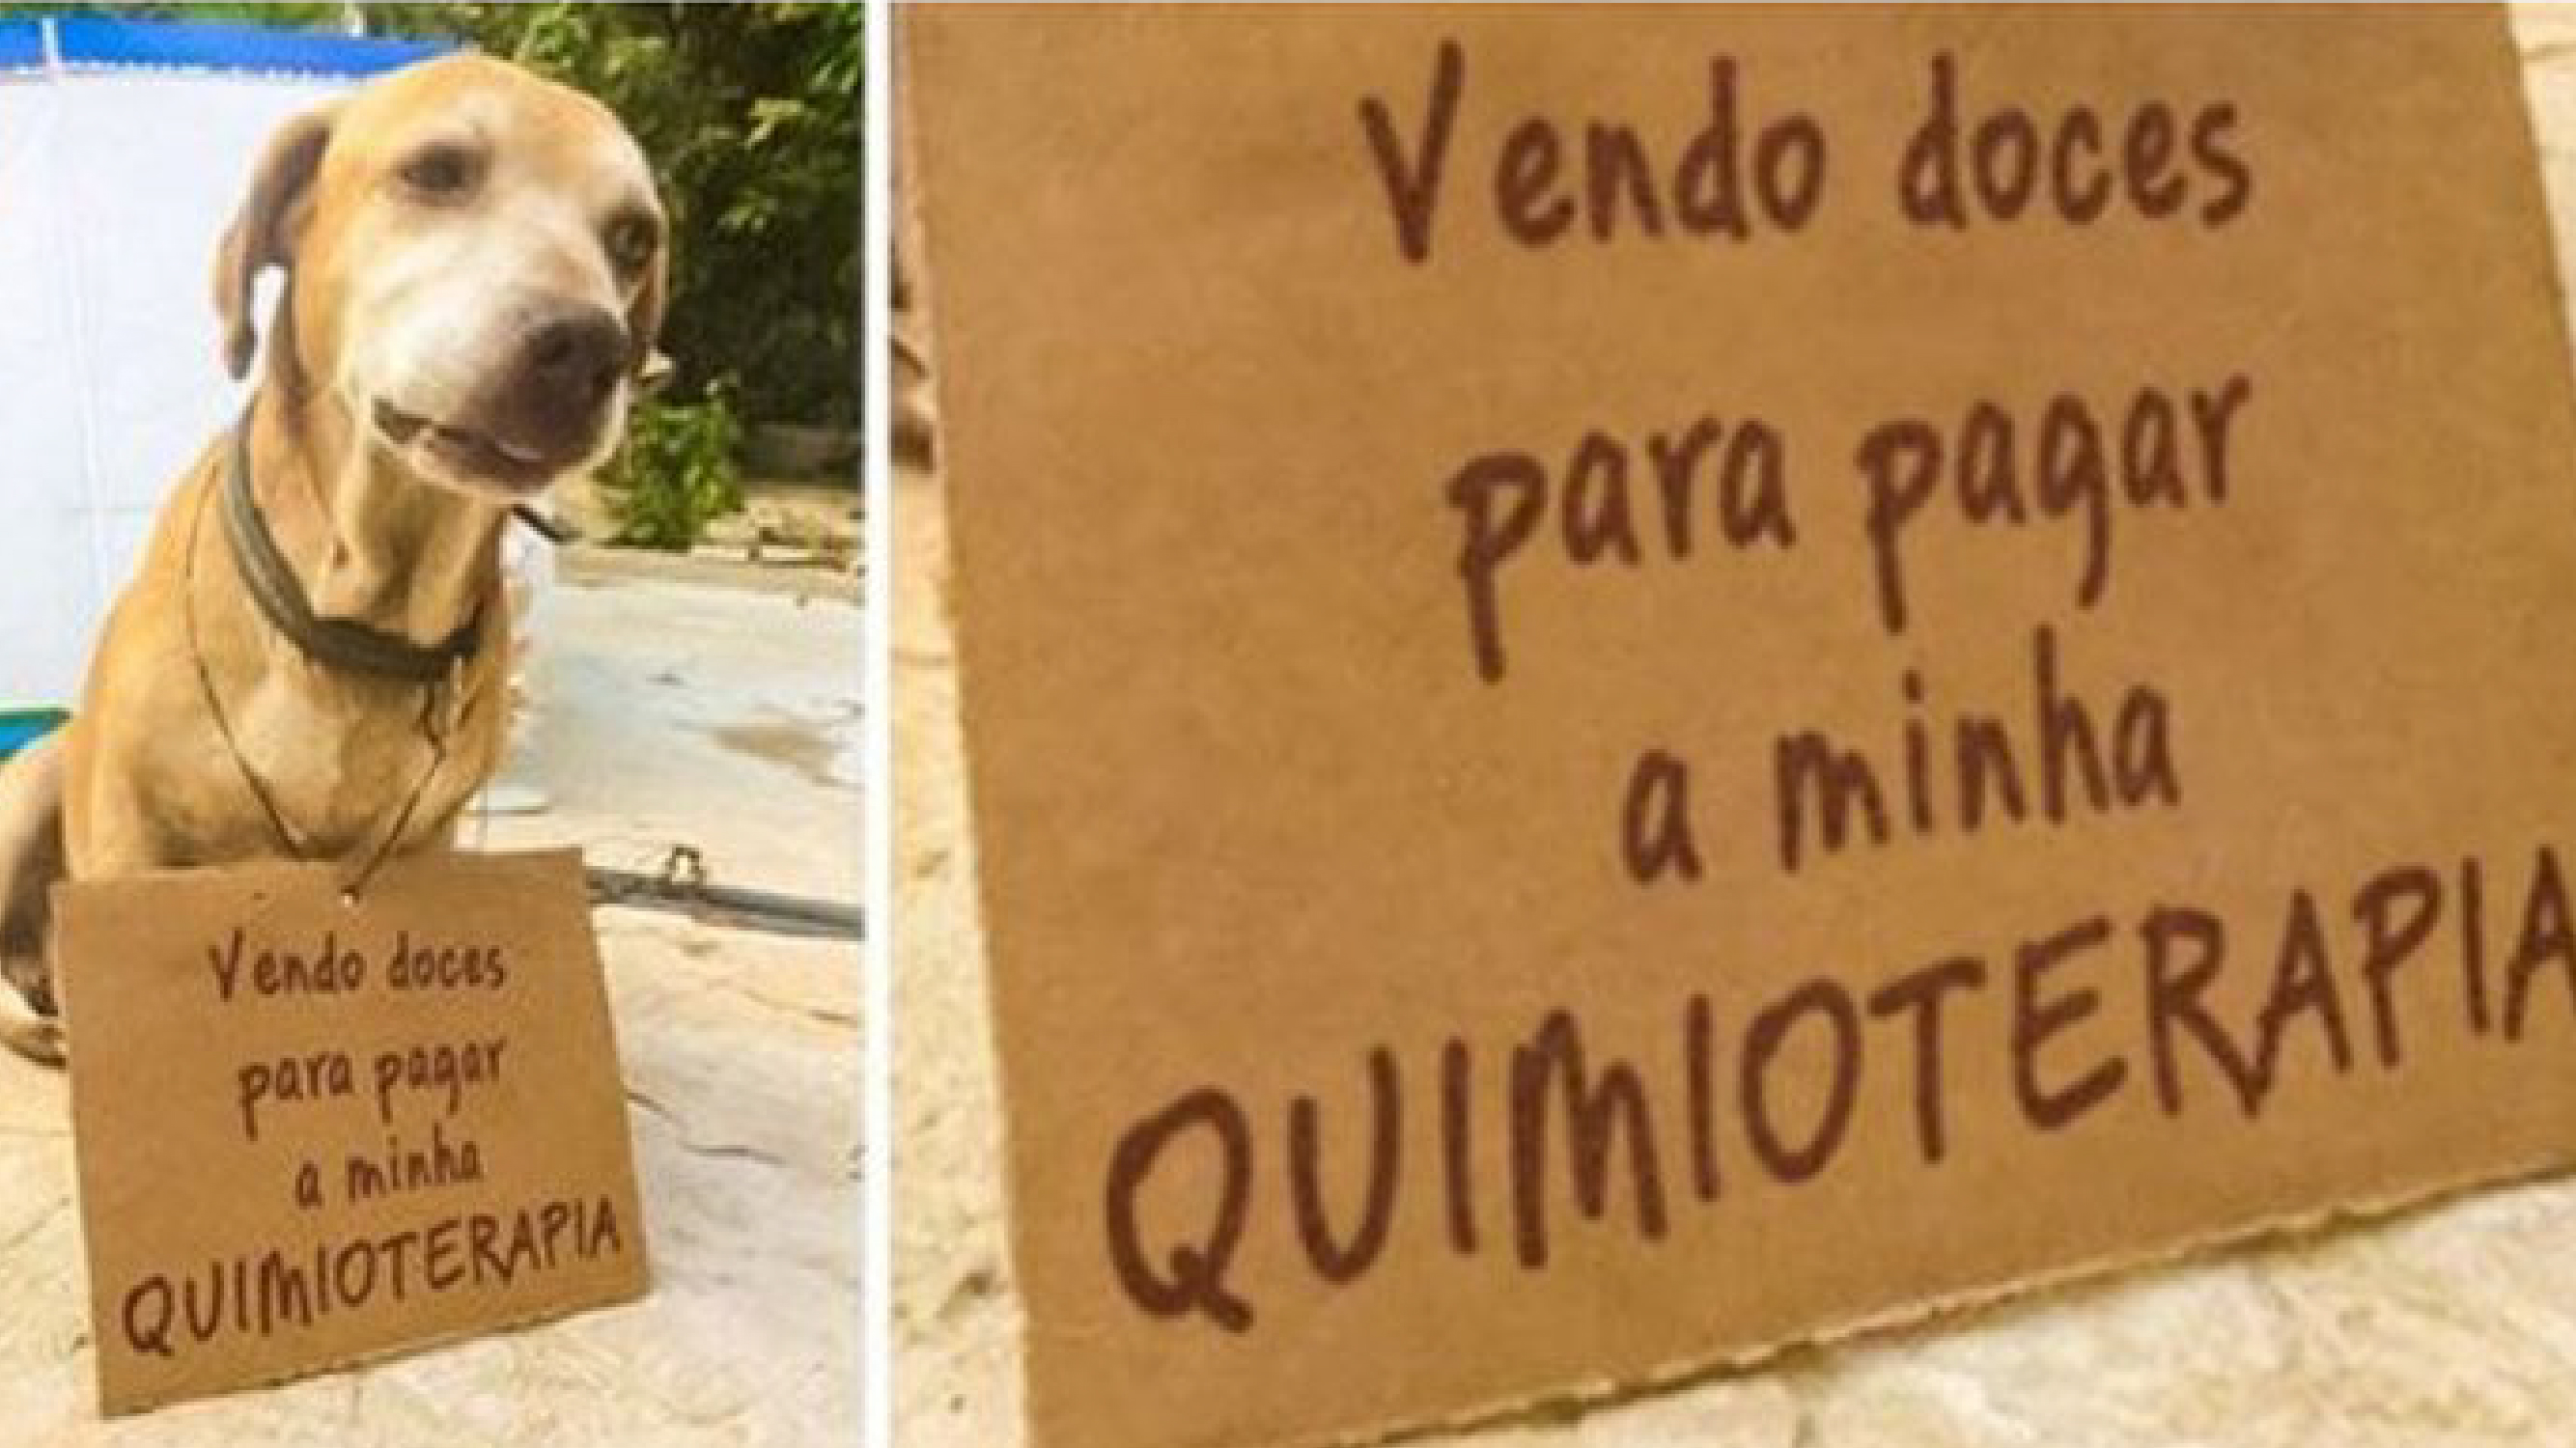 Cachorrinho com câncer vende doces para pagar tratamento/ Imagem: Internet